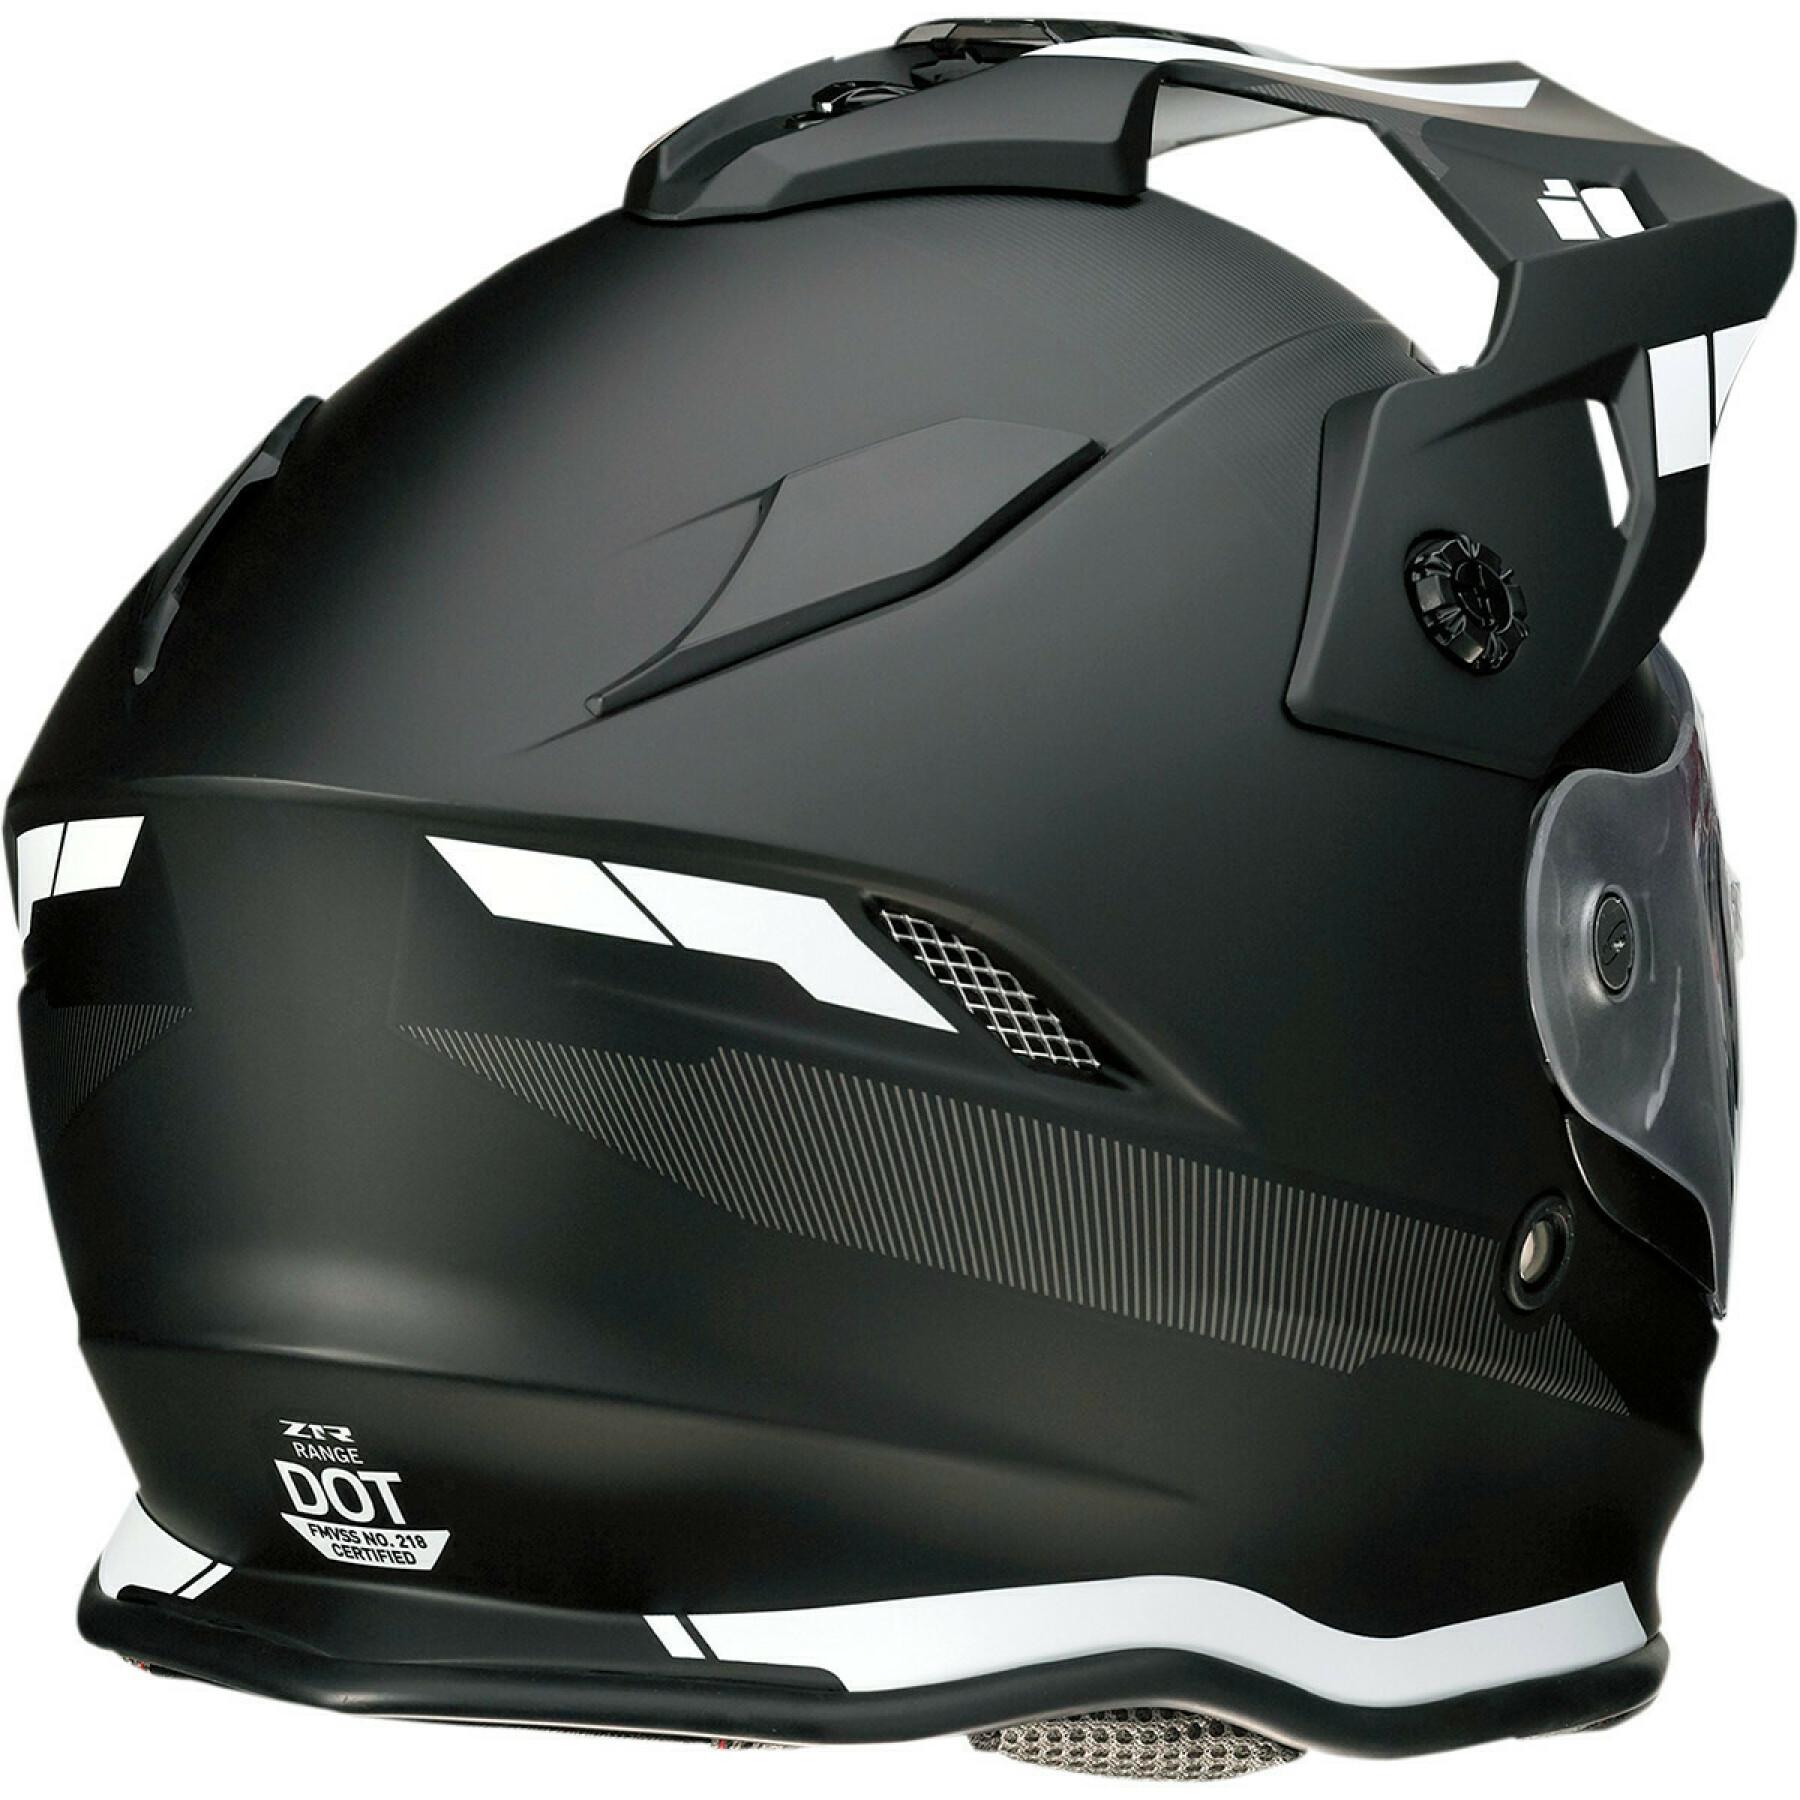 Modular motorcycle helmet Z1R range uptke